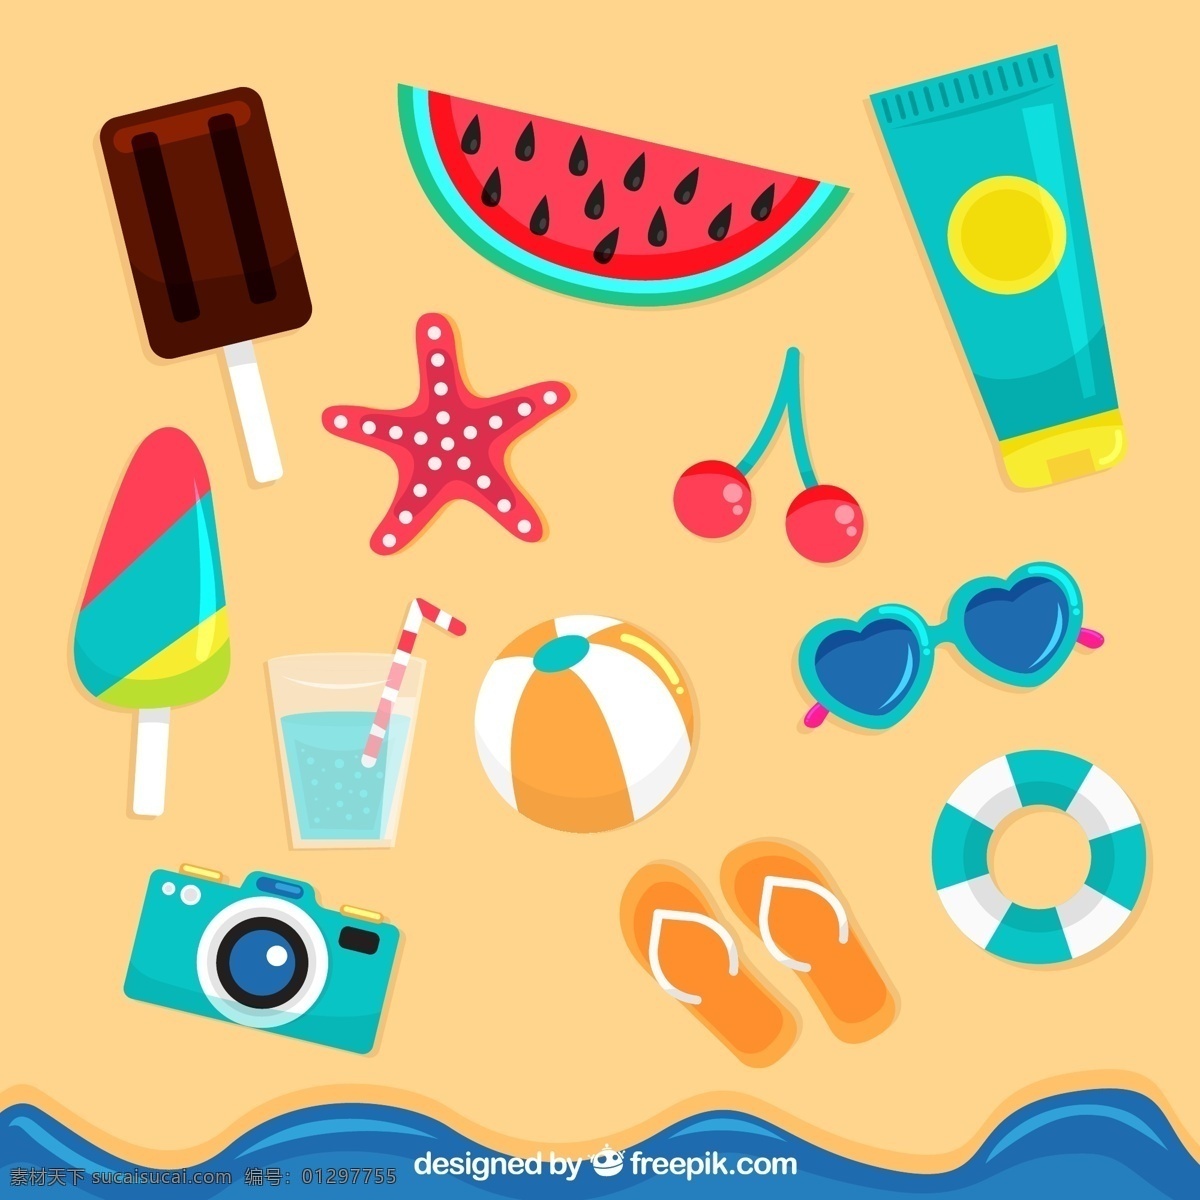 创意 沙滩 上 旅游 物品 沙滩上 雪糕 西瓜 海星 生活用品 生活百科 休闲娱乐